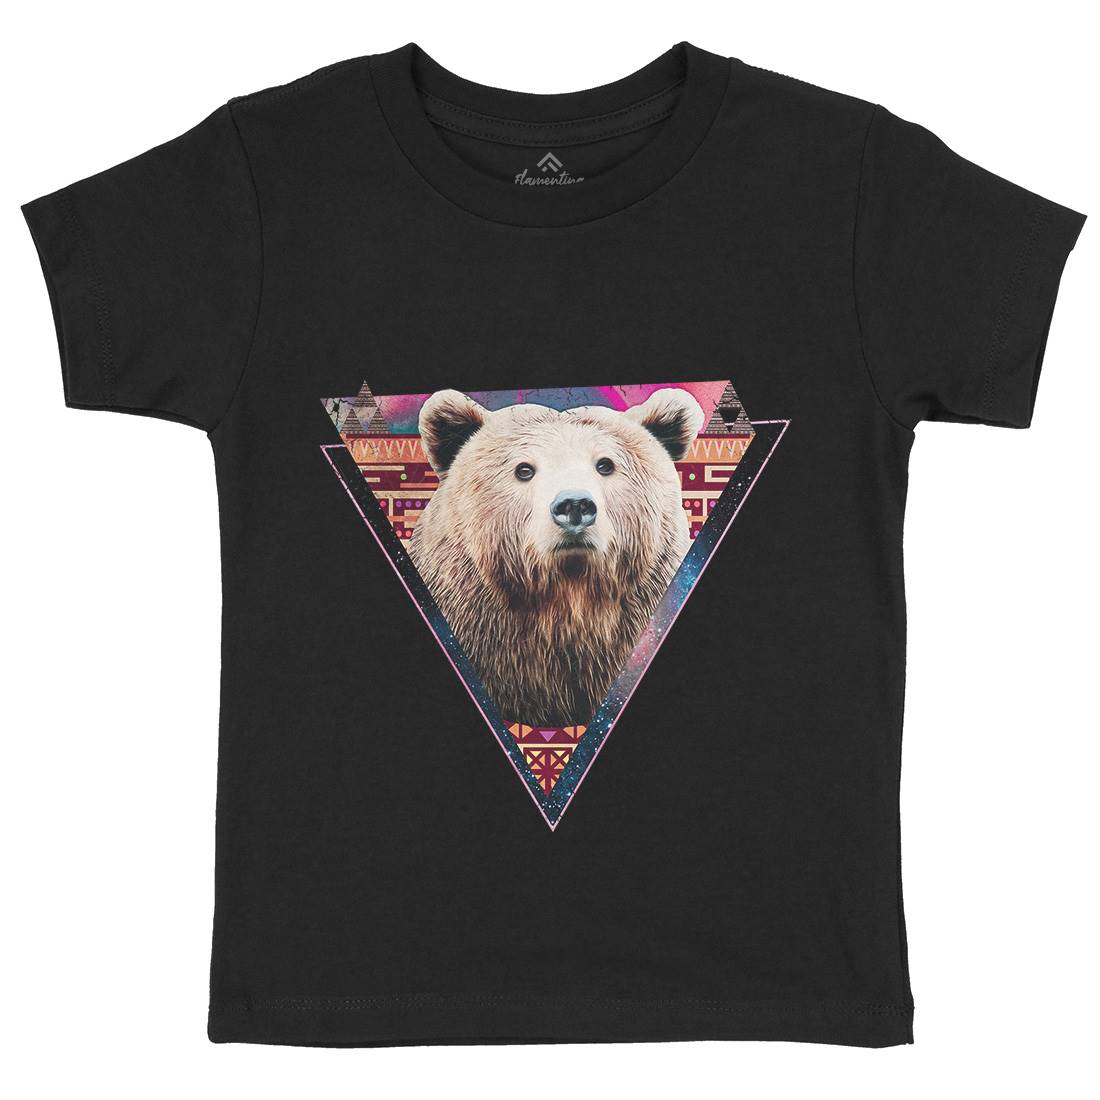 Hip Bear Kids Crew Neck T-Shirt Space A846